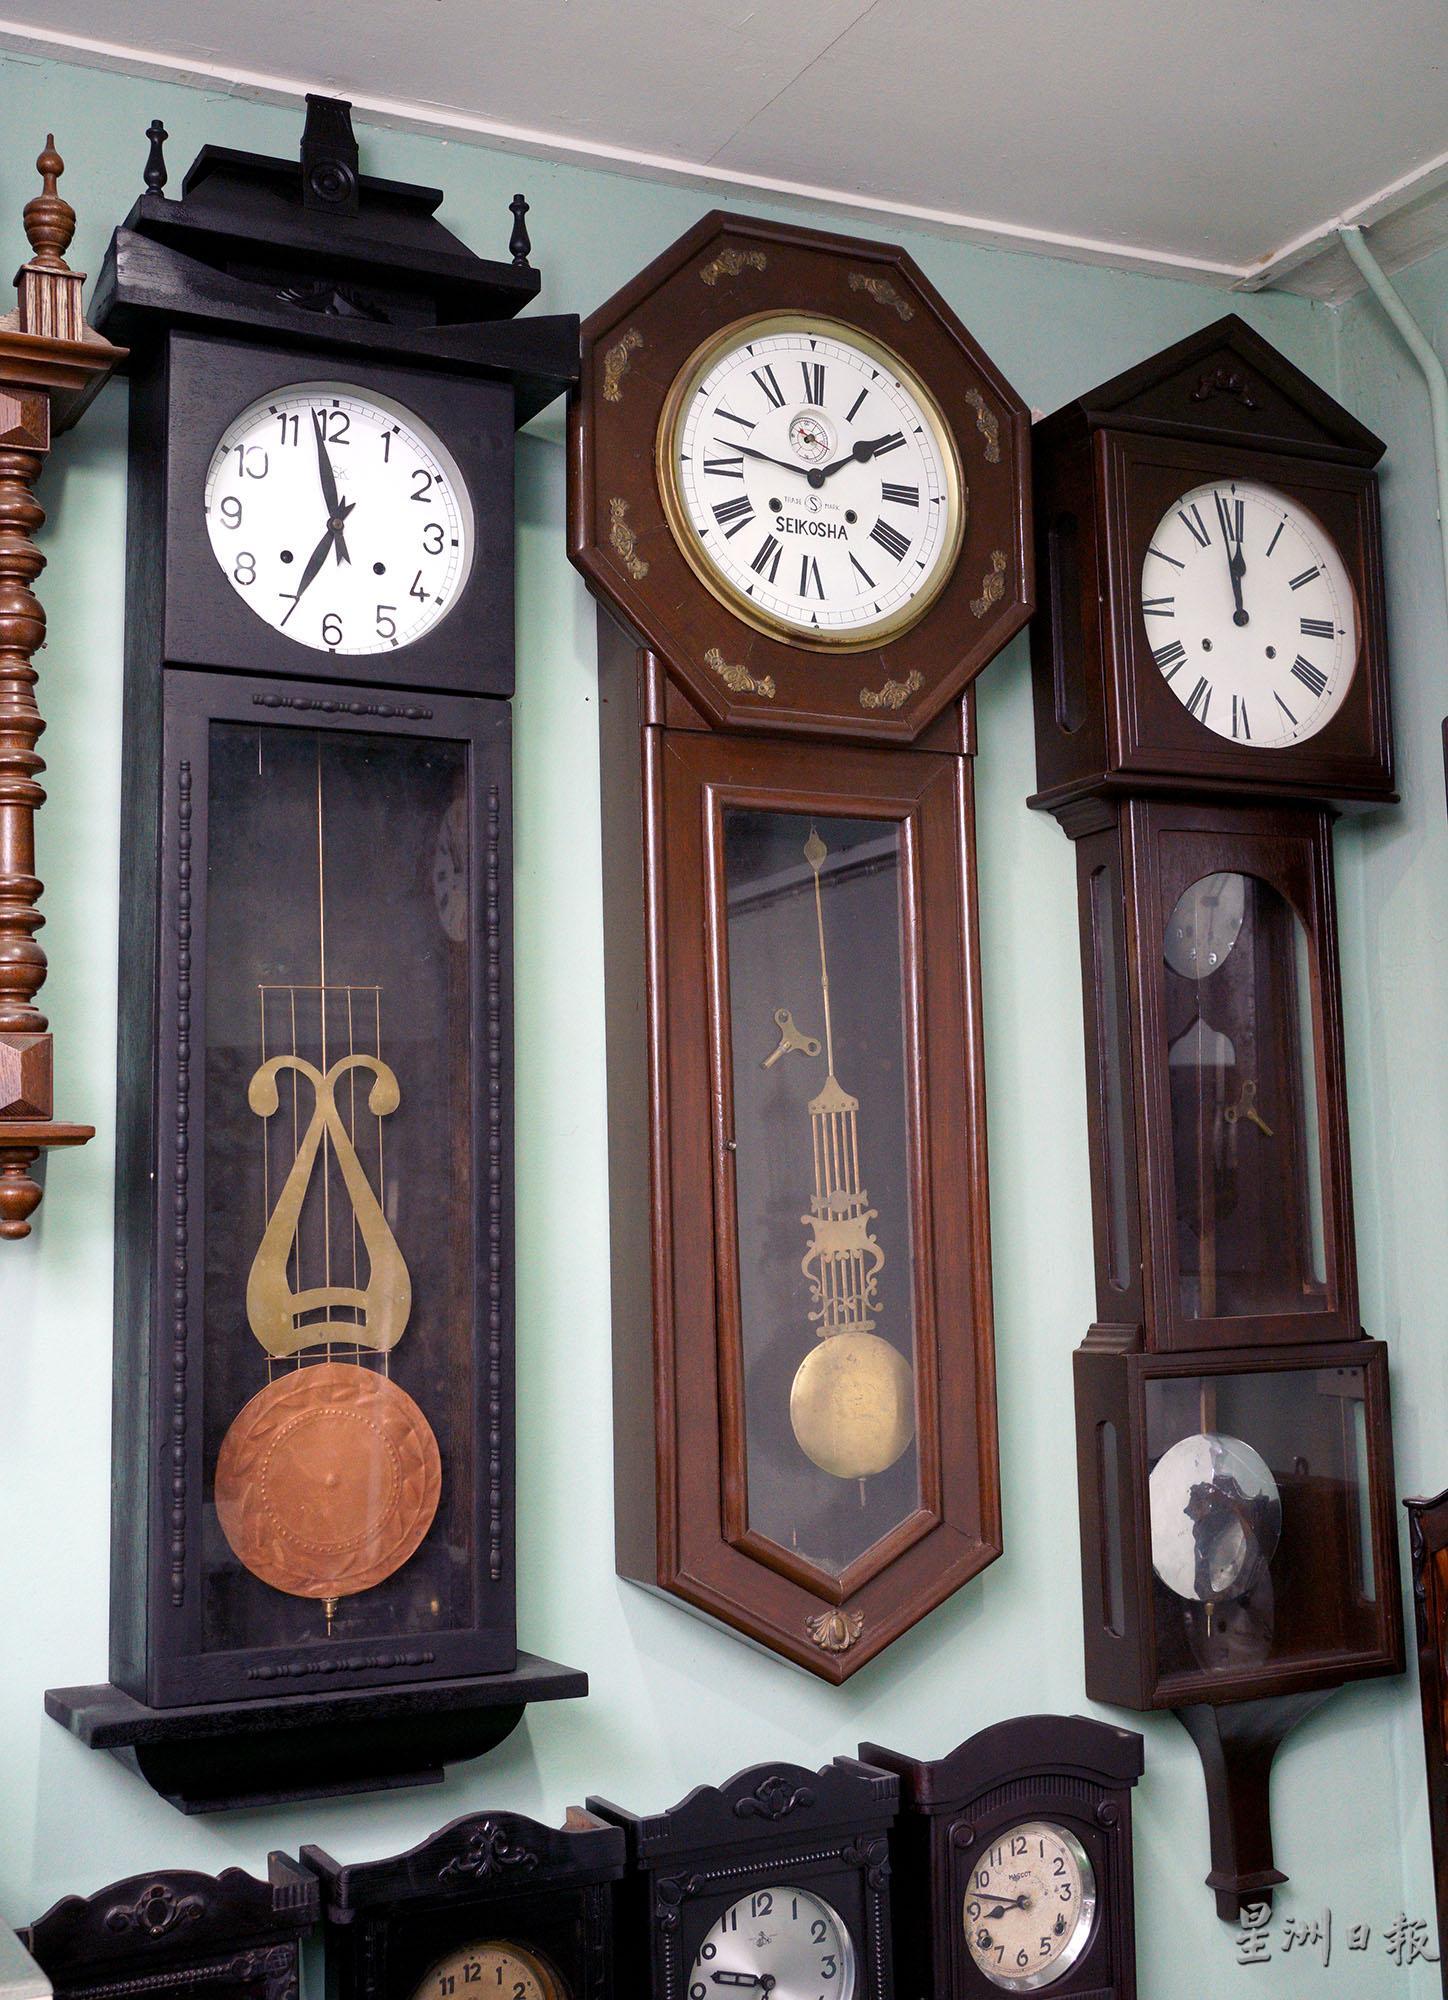 刘少强不但对旧钟锺情独锺，也学会了自己修复旧钟，开发出对修理钟的兴趣和乐趣。

